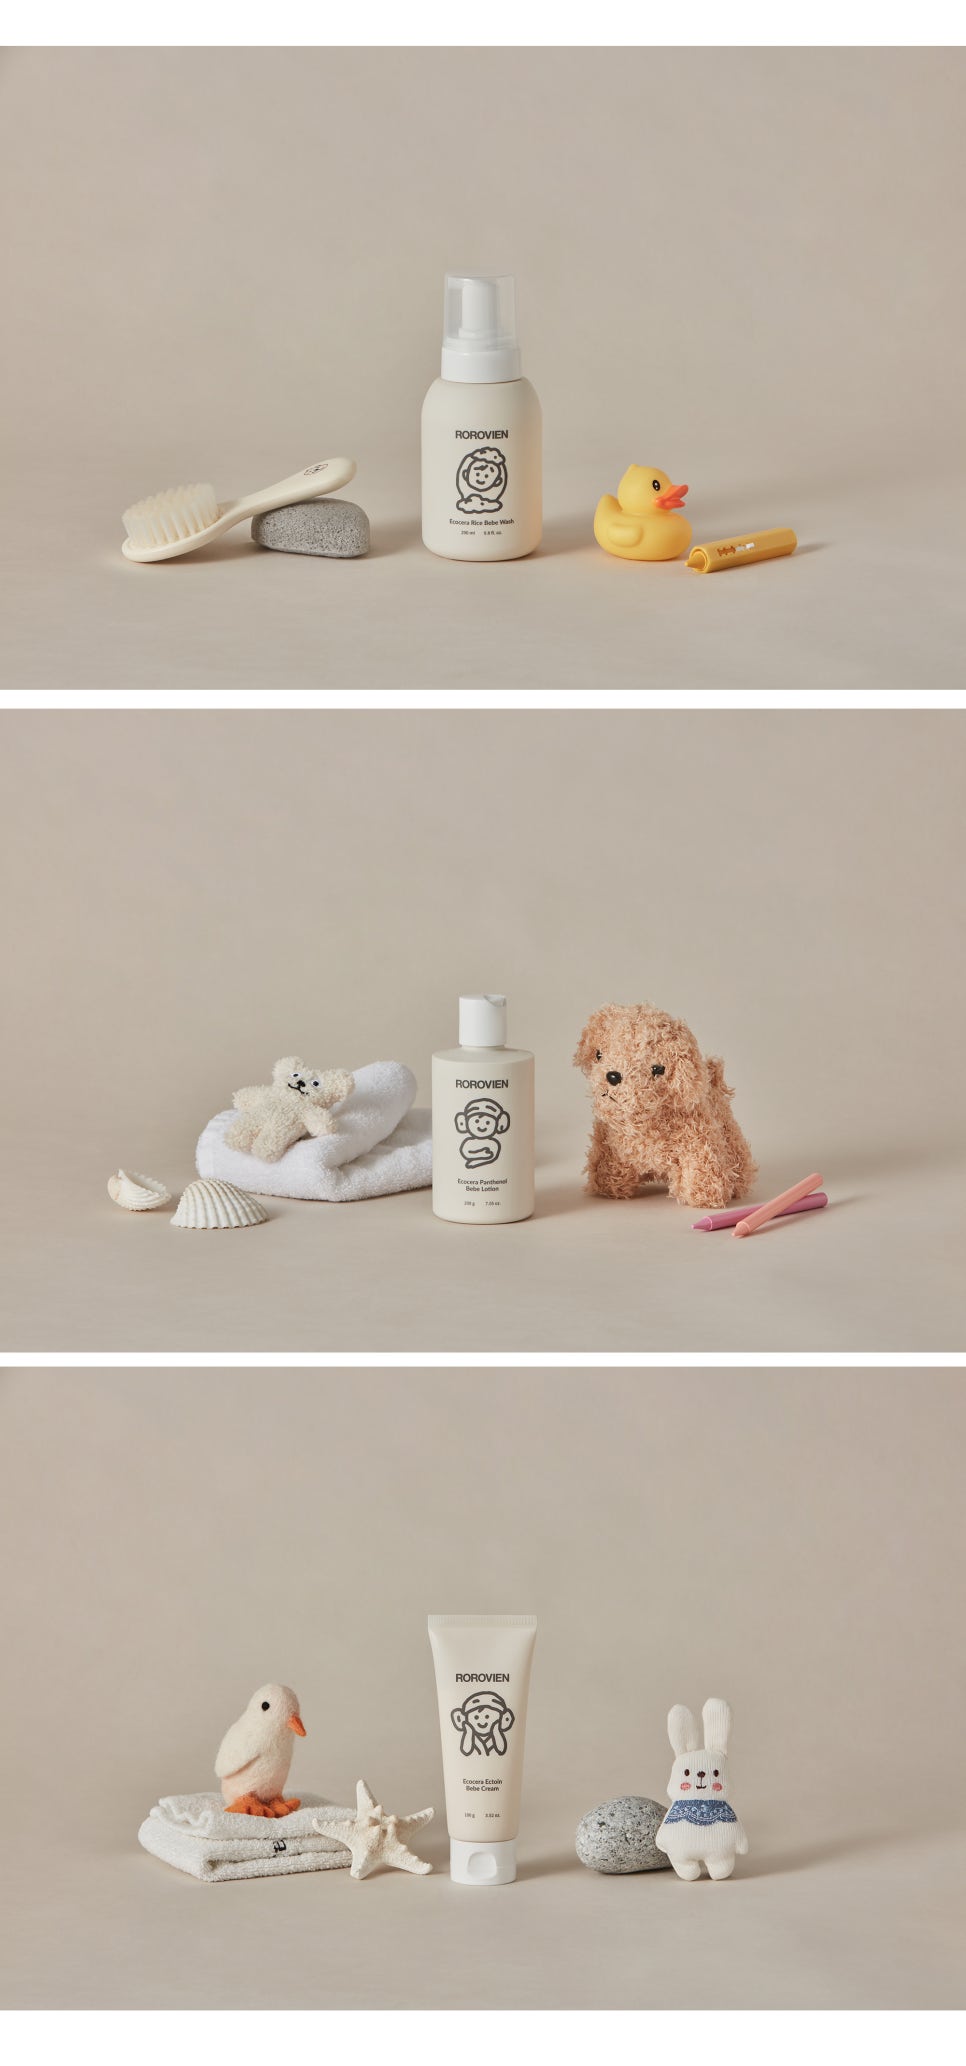 라비앙, 영유아 어린이 화장품 '로로비앙' 브랜드 런칭! 순한 바디워시, 로션, 크림